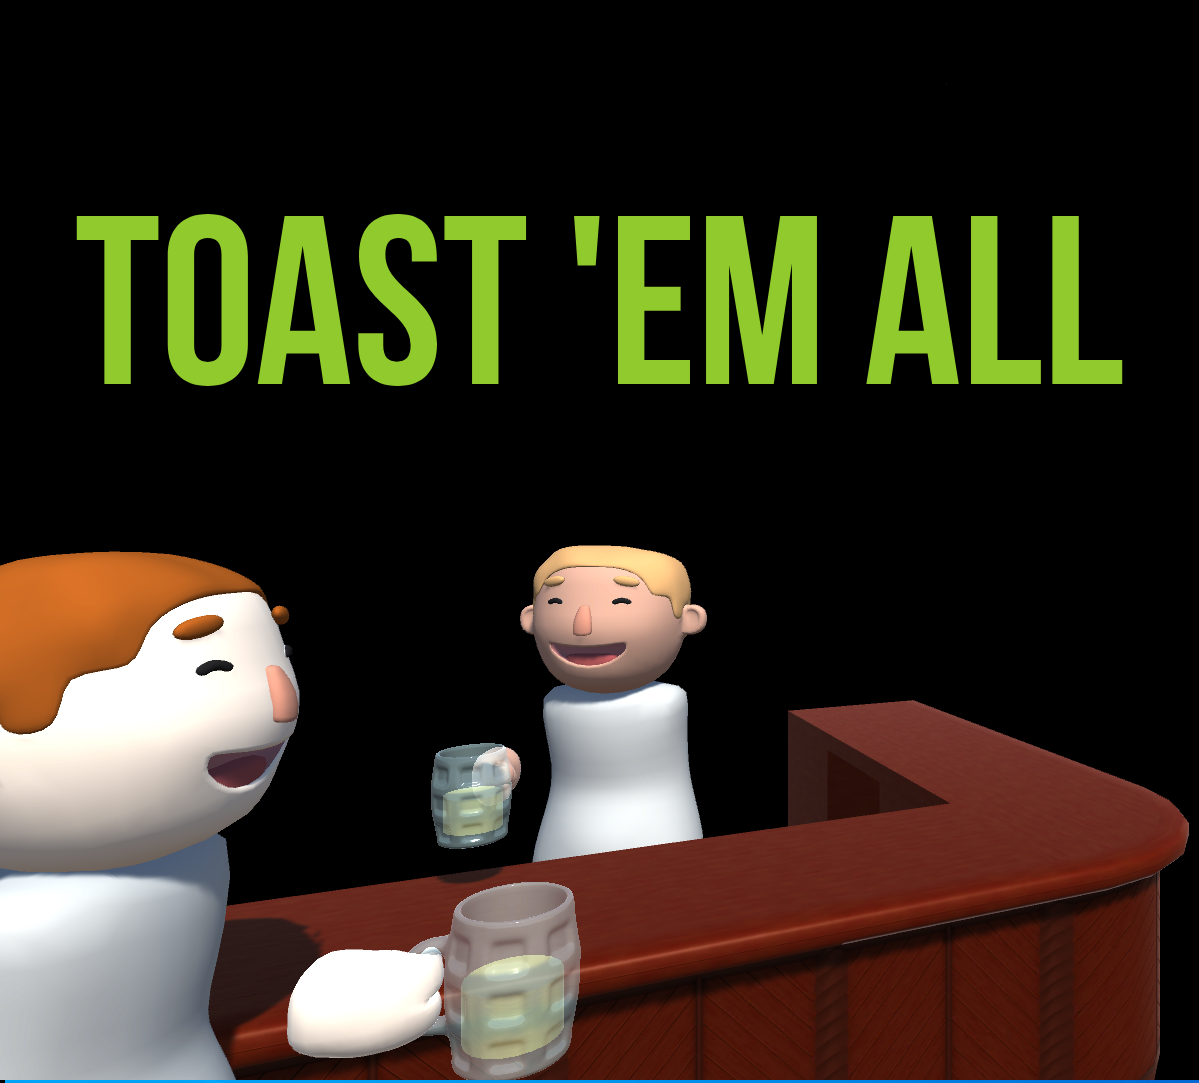 Toast 'em all